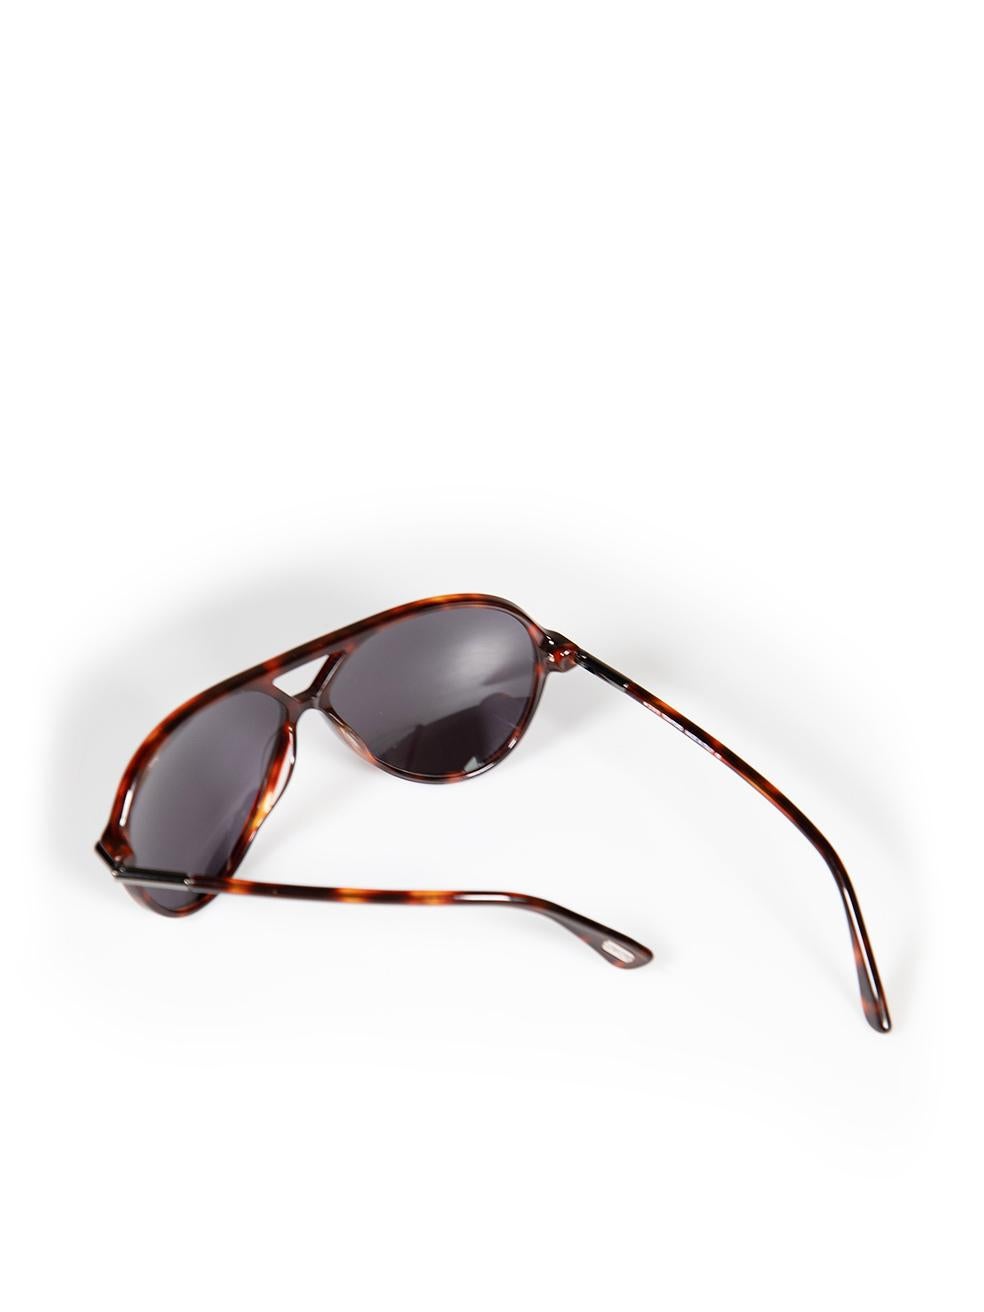 Tom Ford Red Havana Tortoiseshell Leopold Sunglasses For Sale 3